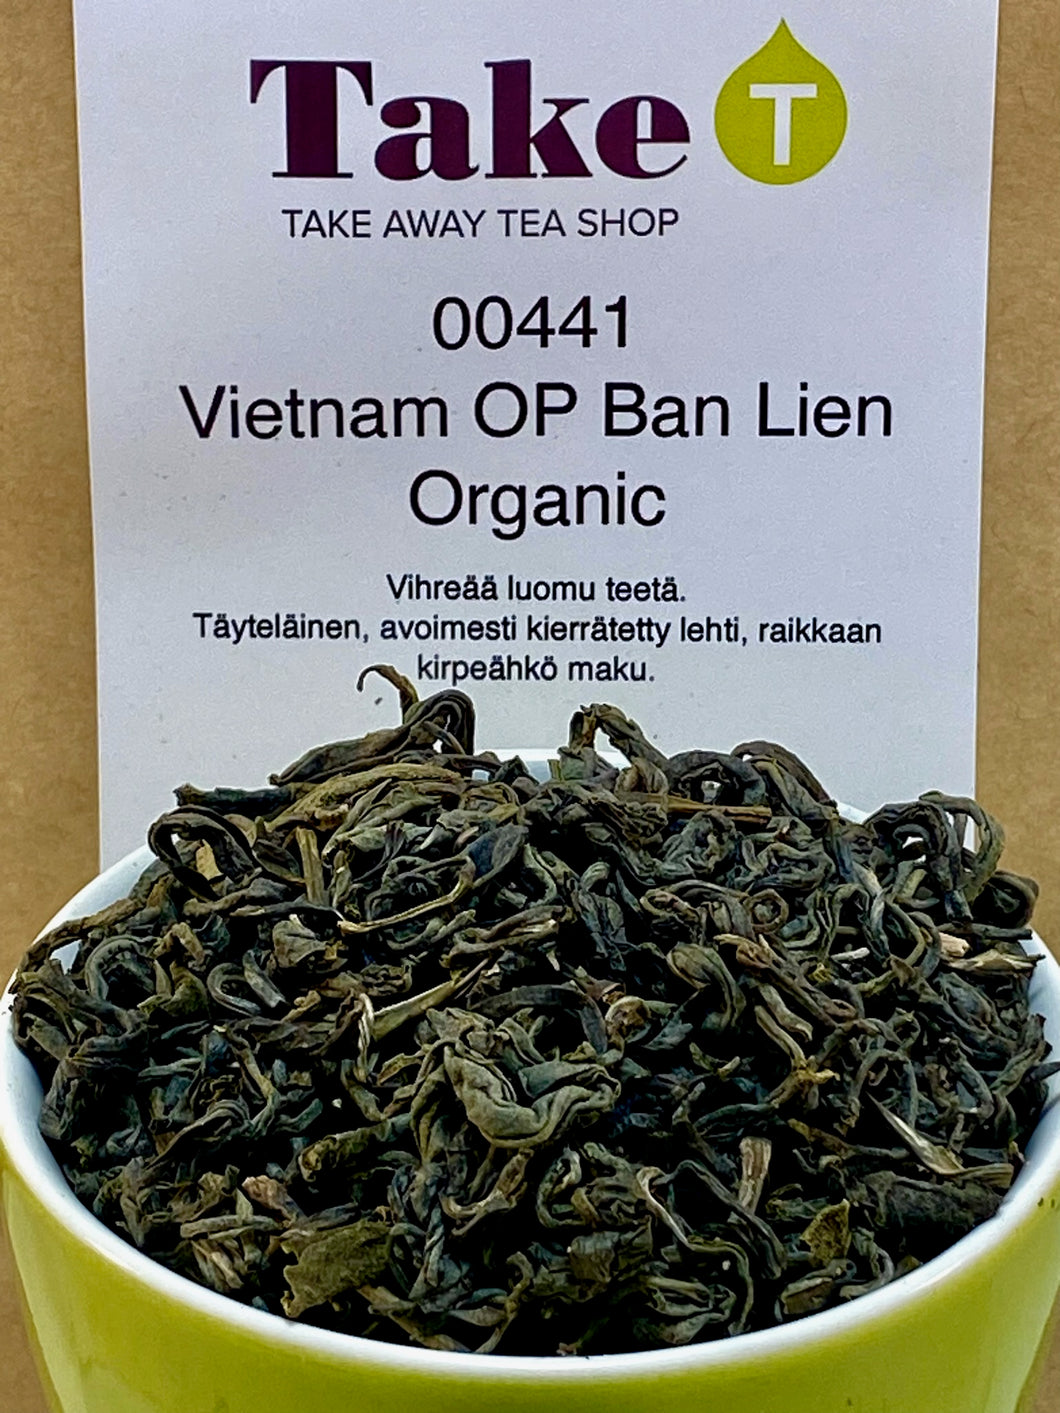 Vietnam OP Ban Lien Organic